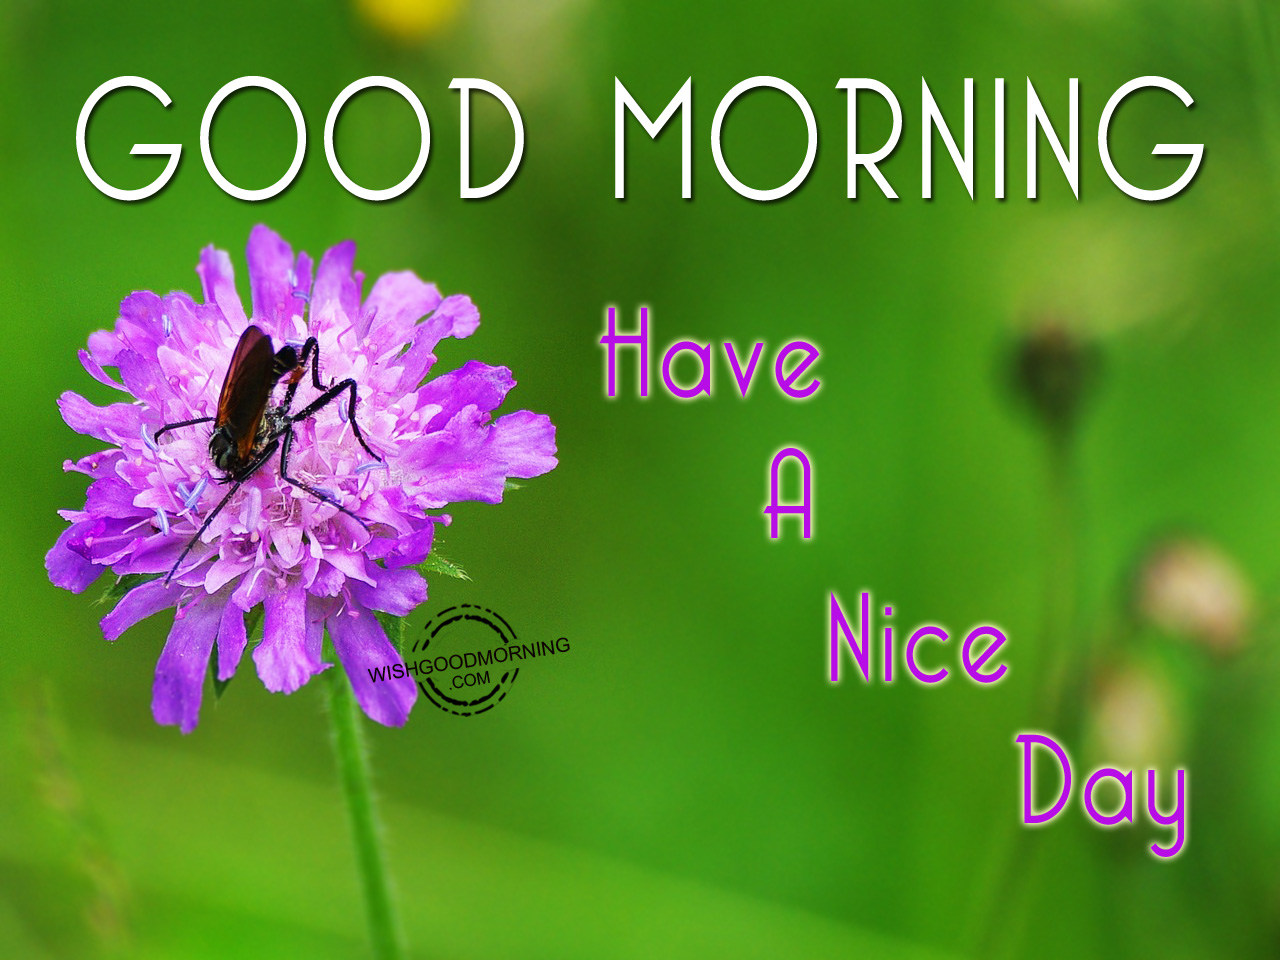 Включи good morning. Good morning have a nice Day картинки. Good Day картинки. Открытки good morning have a good Day. Good morning have a good Day.